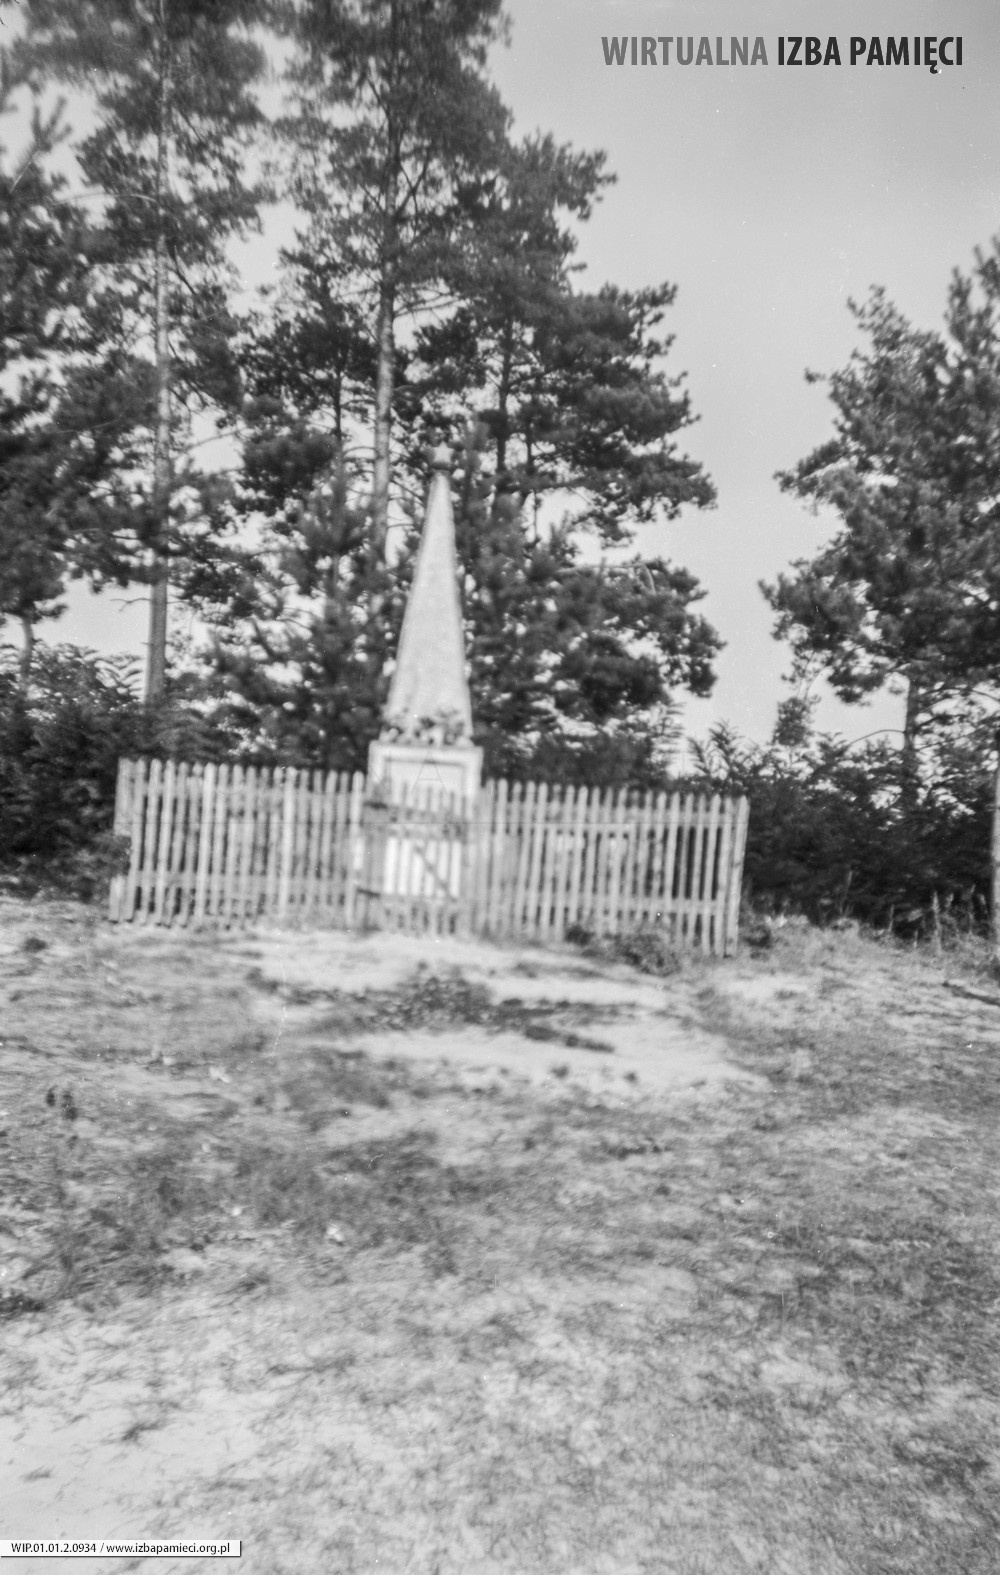 1980. Pomnik spadochroniarzy radzieckich w Mołodyczu